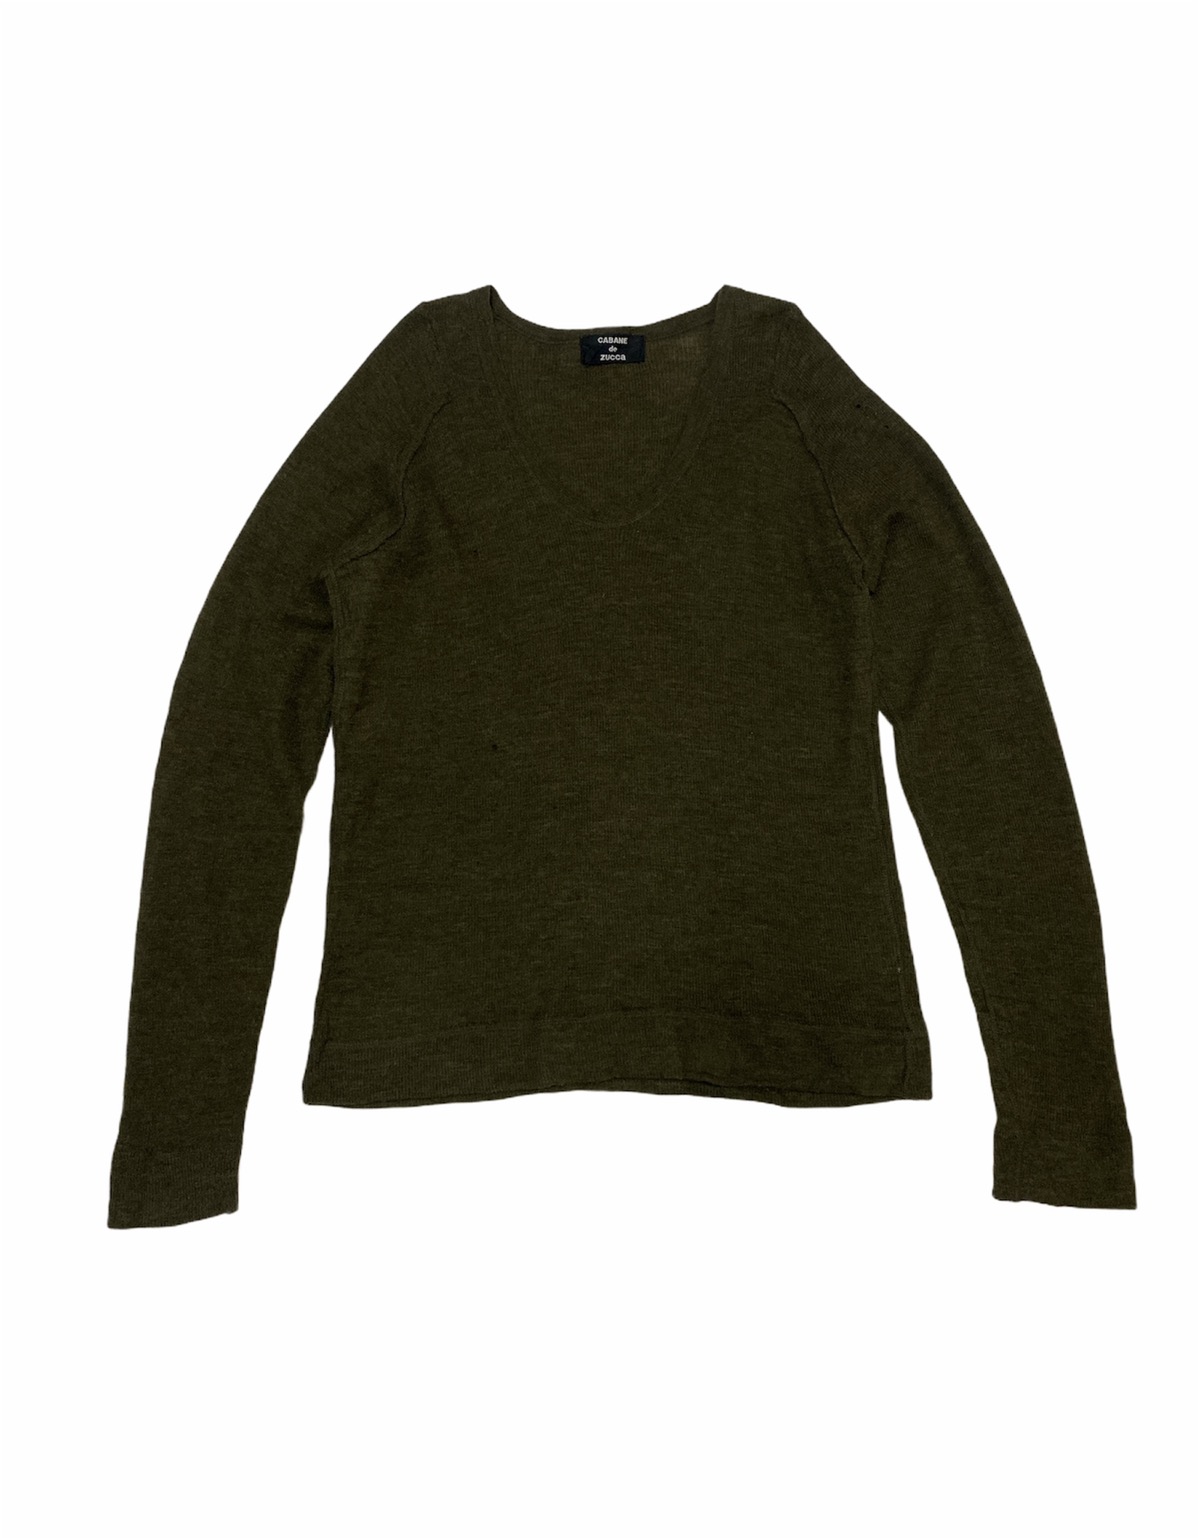 Cabane De Zucca - Japanese Brand Cabane De Zucca Dark Green Knit Sweater - 1